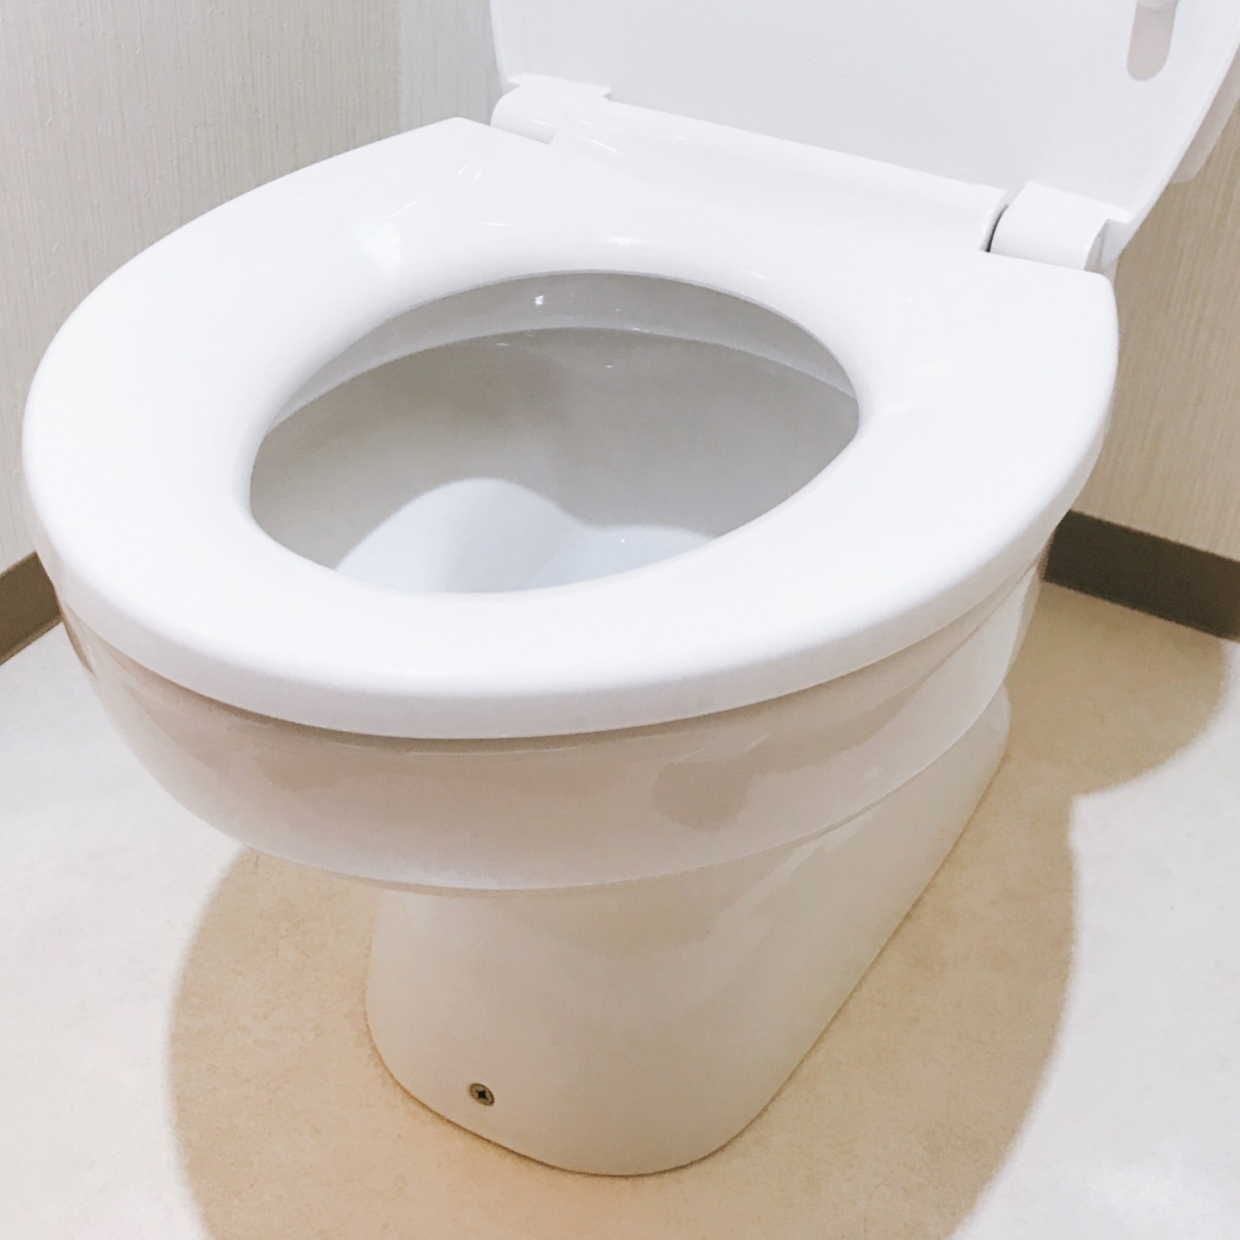 クサい原因になっている「トイレの床やすき間」の汚れを確実に落とす“タスカジ流掃除術”